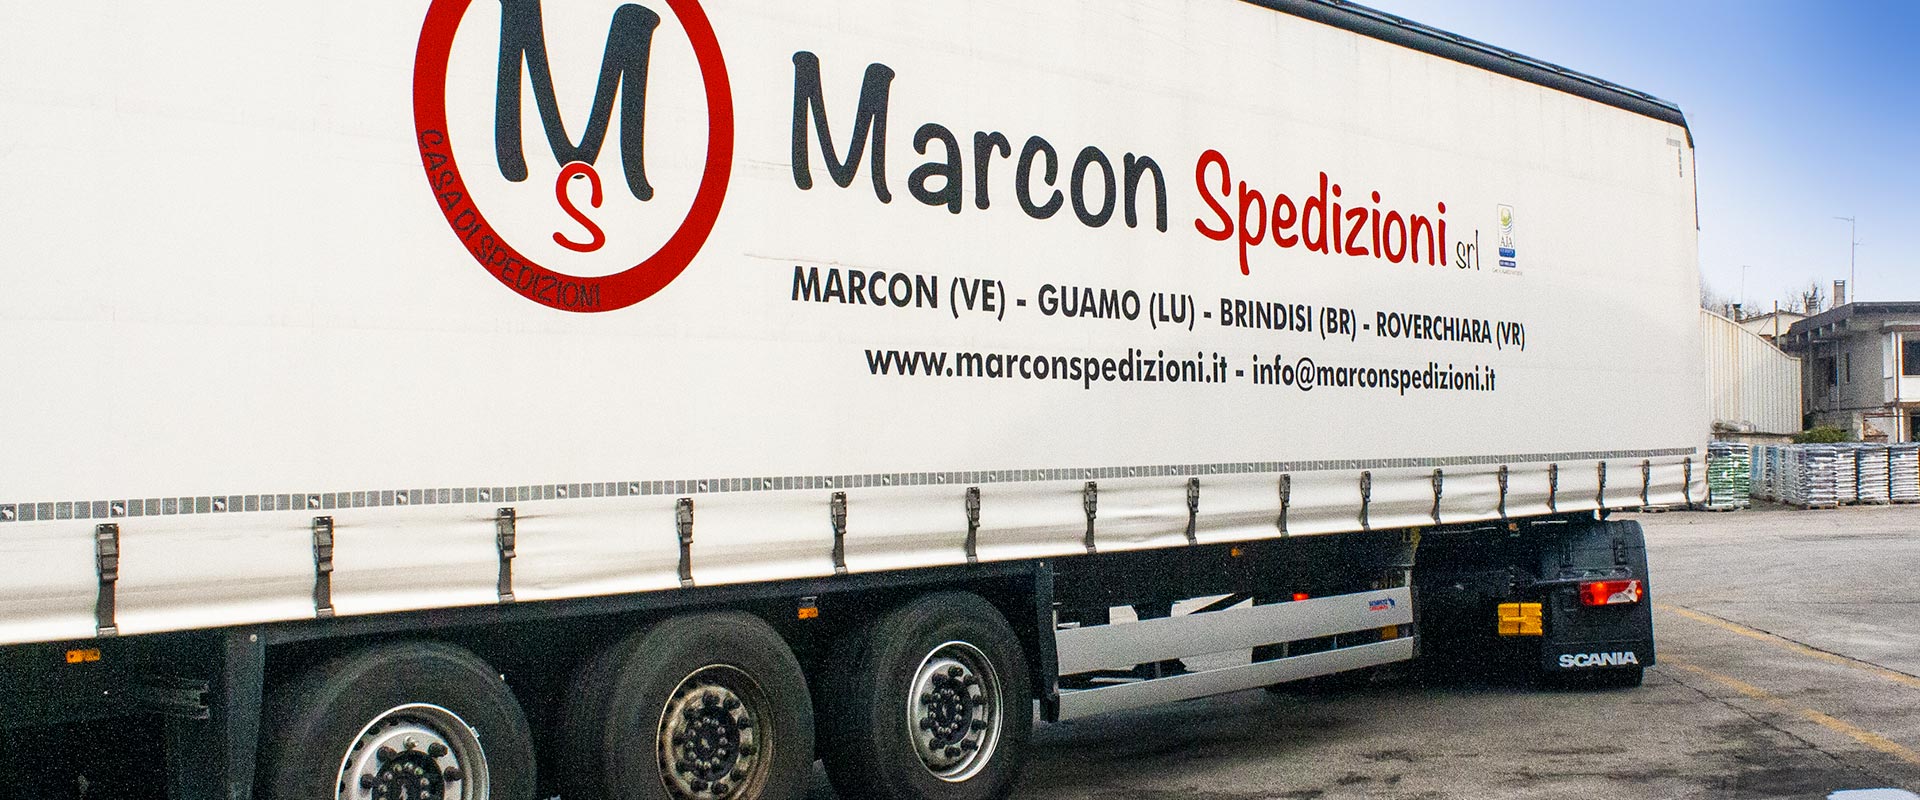 marcon-spedizioni-trasporto-nazionale-logistica-stoccaggio